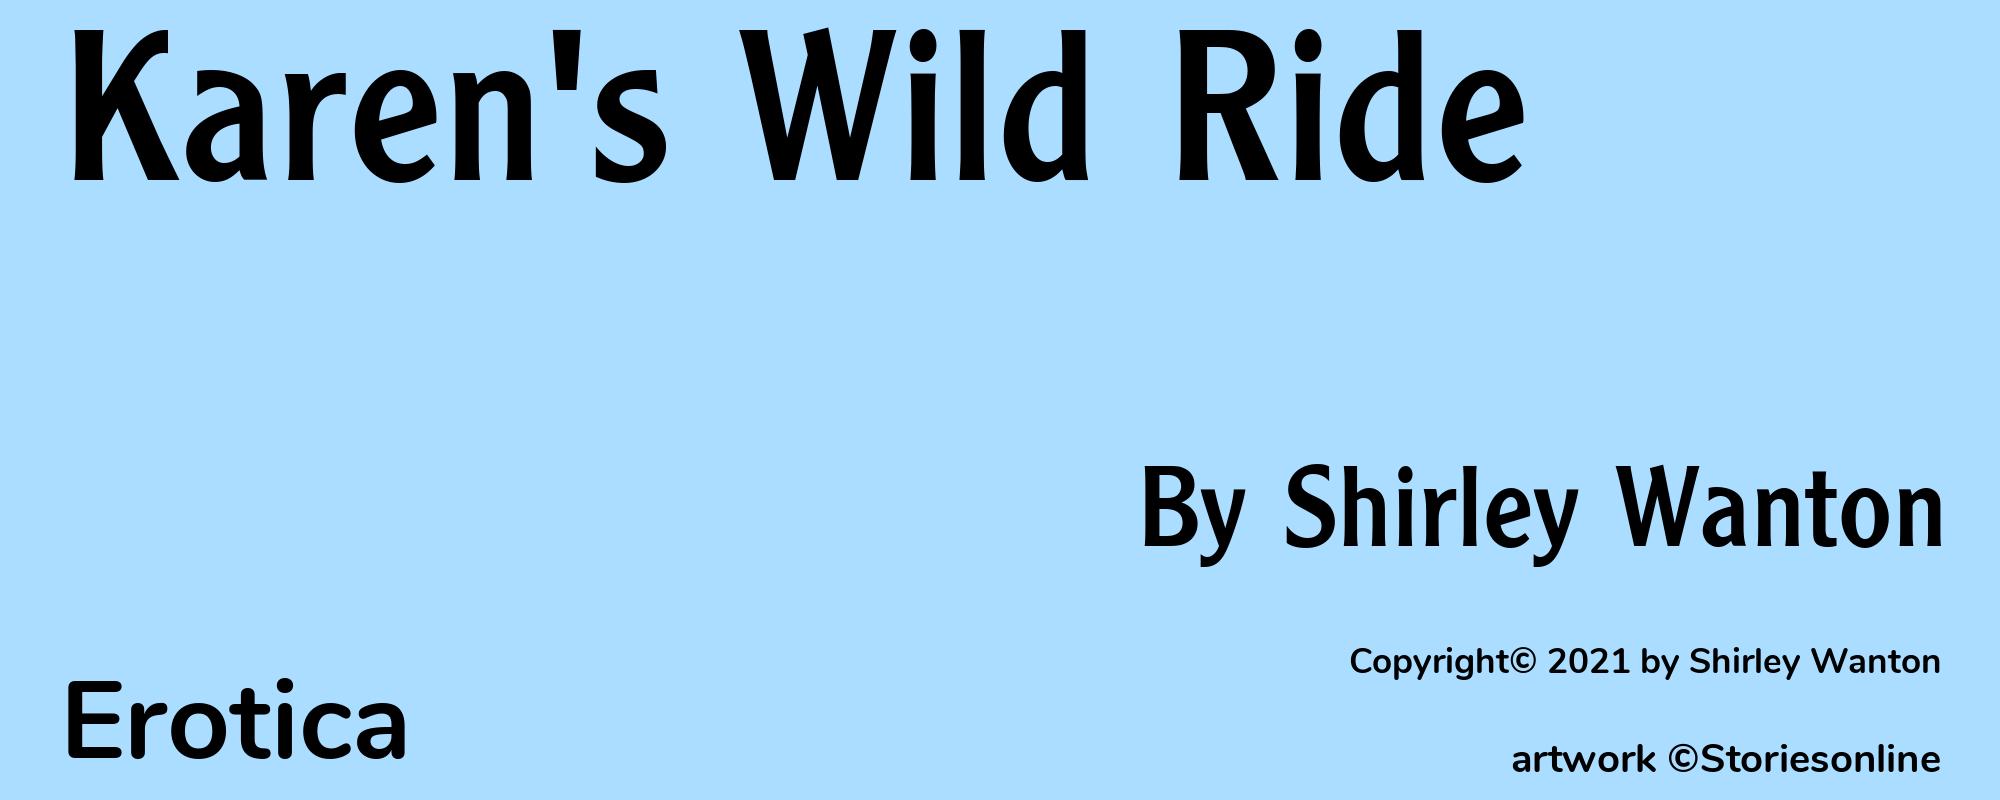 Karen's Wild Ride - Cover